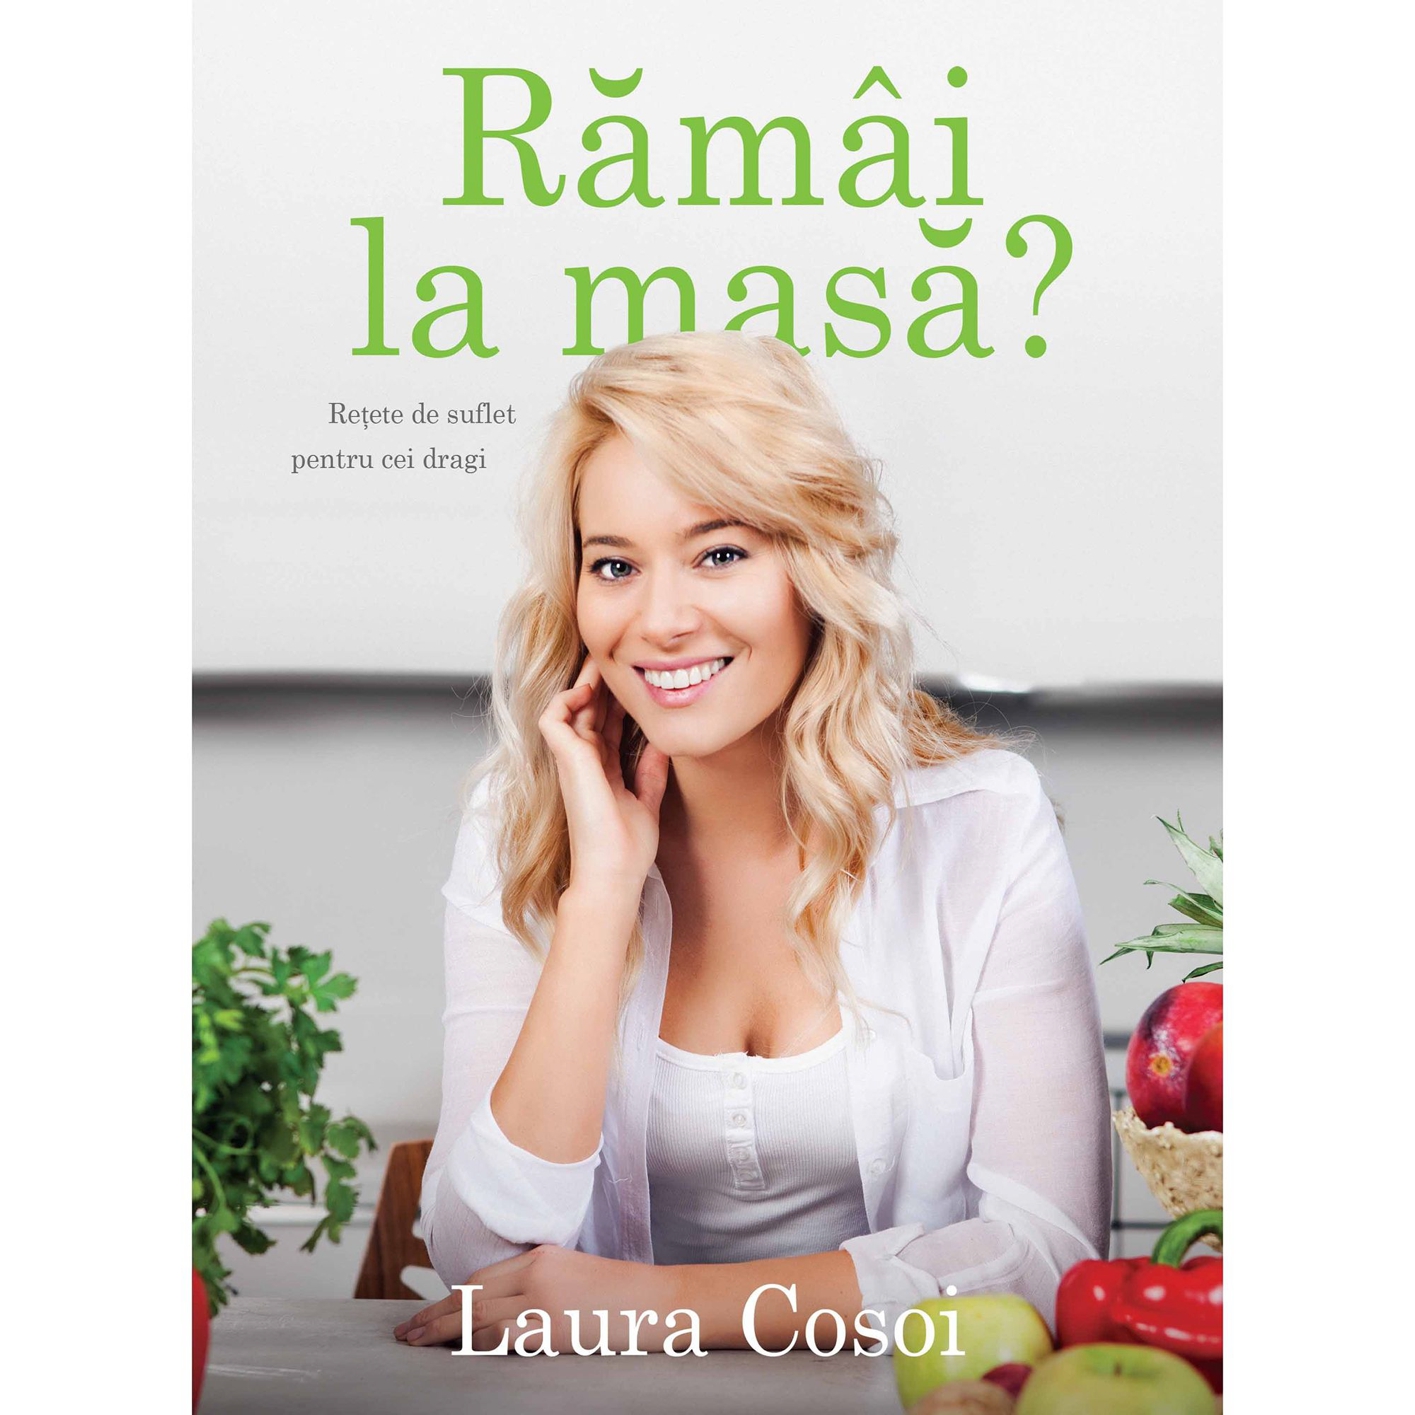 Laura Cosoi 06